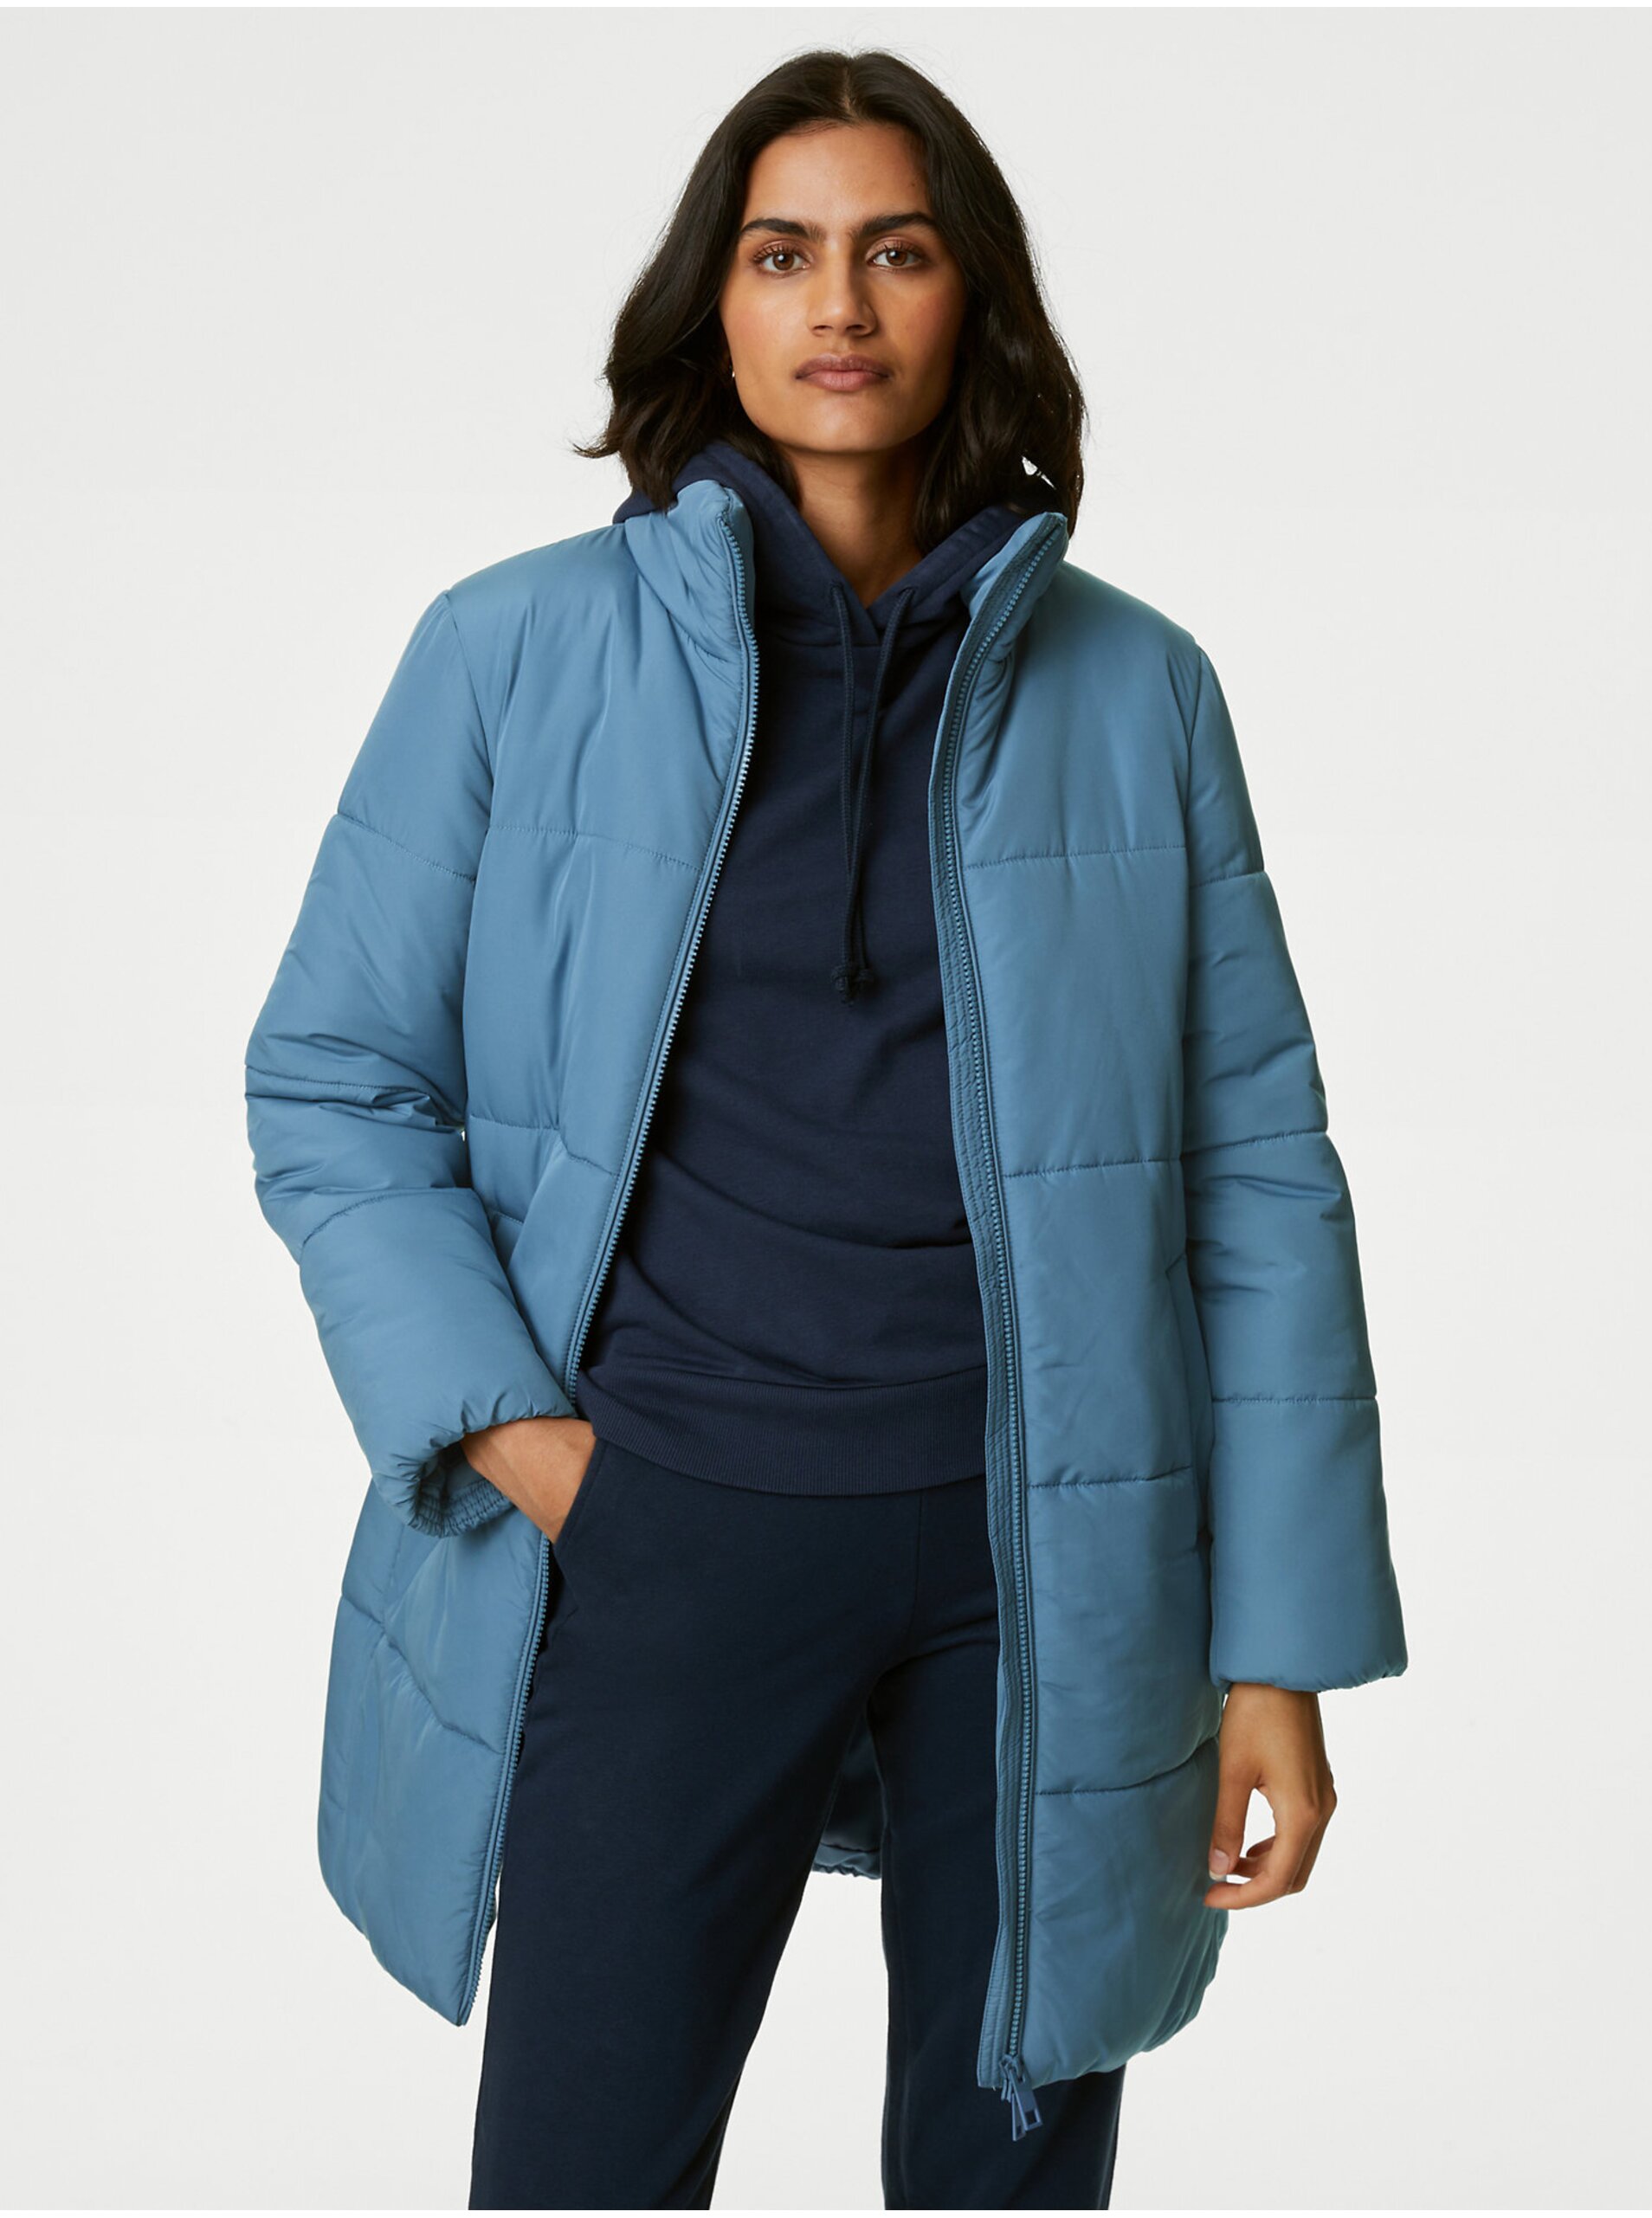 Lacno Modrý dámsky zimný prešívaný kabát Marks & Spencer